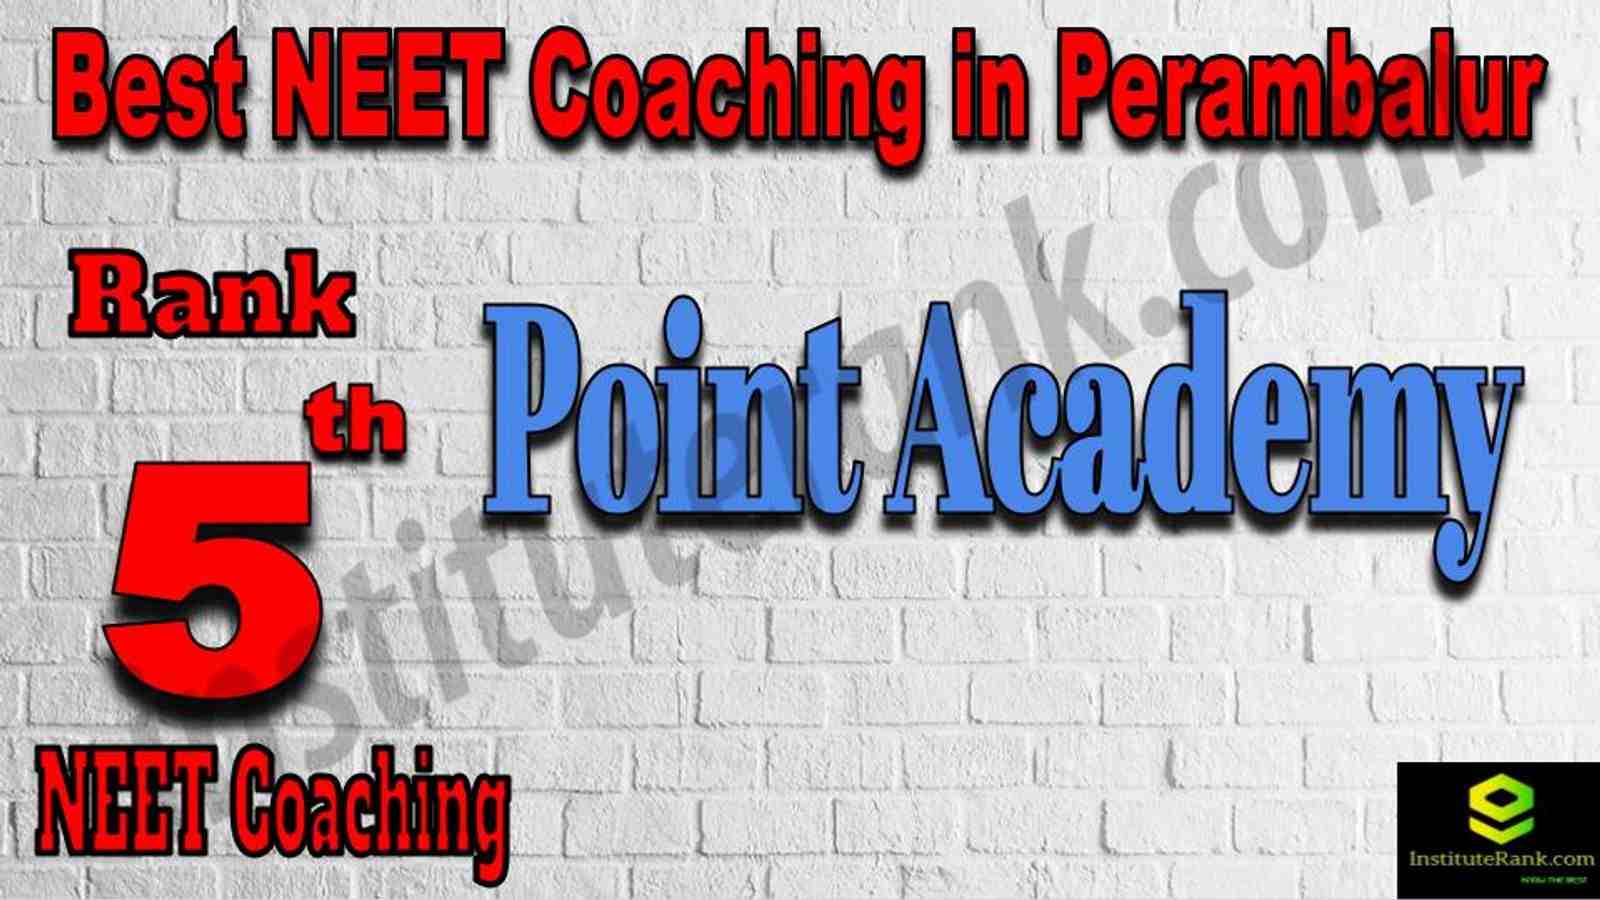 5th Best NEET Coaching in Perambalur